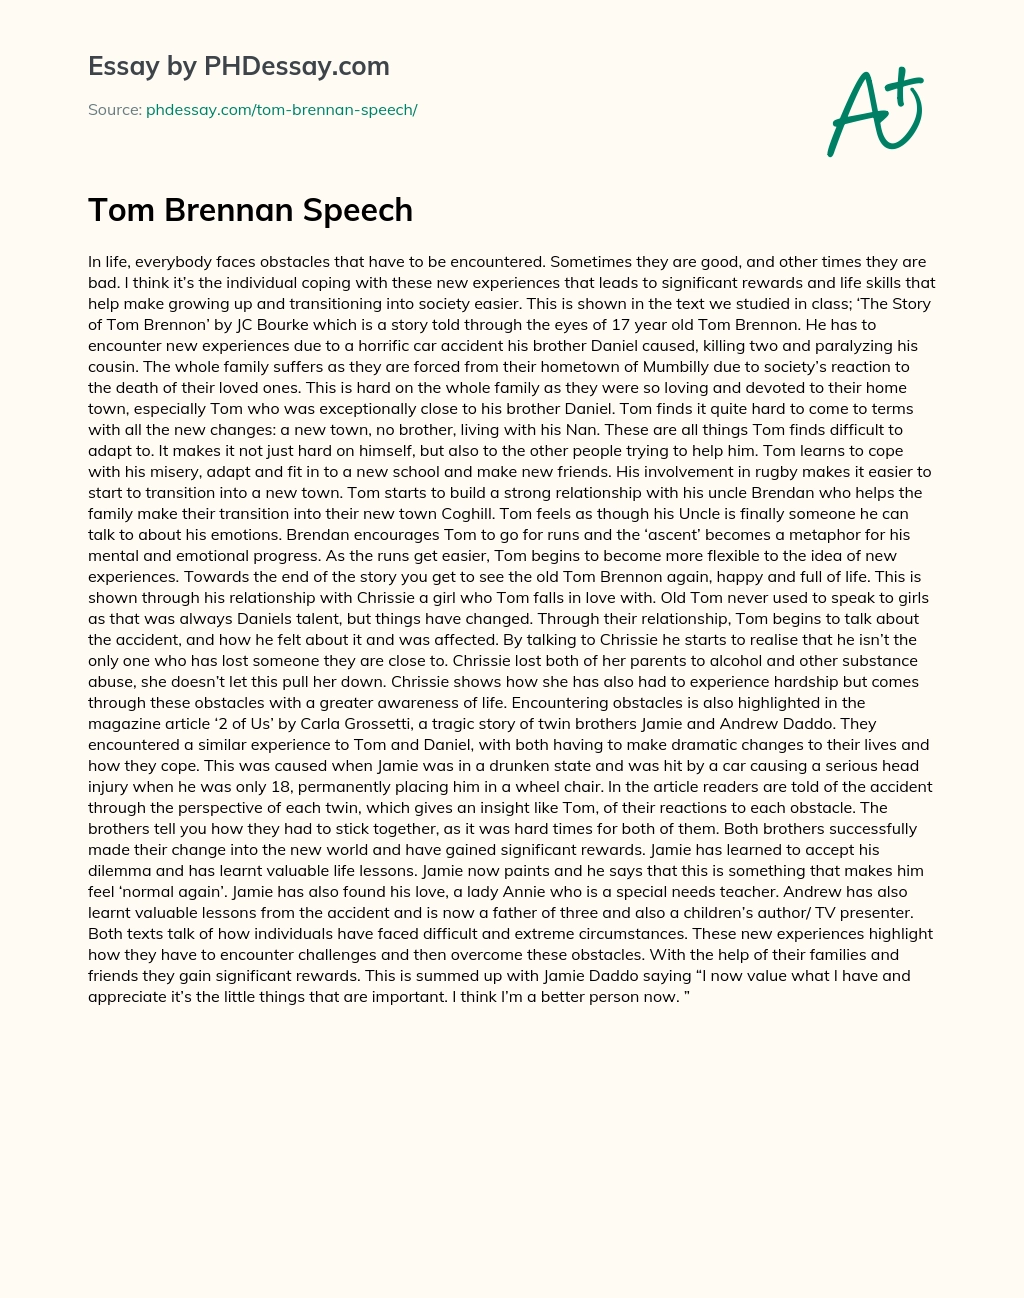 Tom Brennan Speech essay